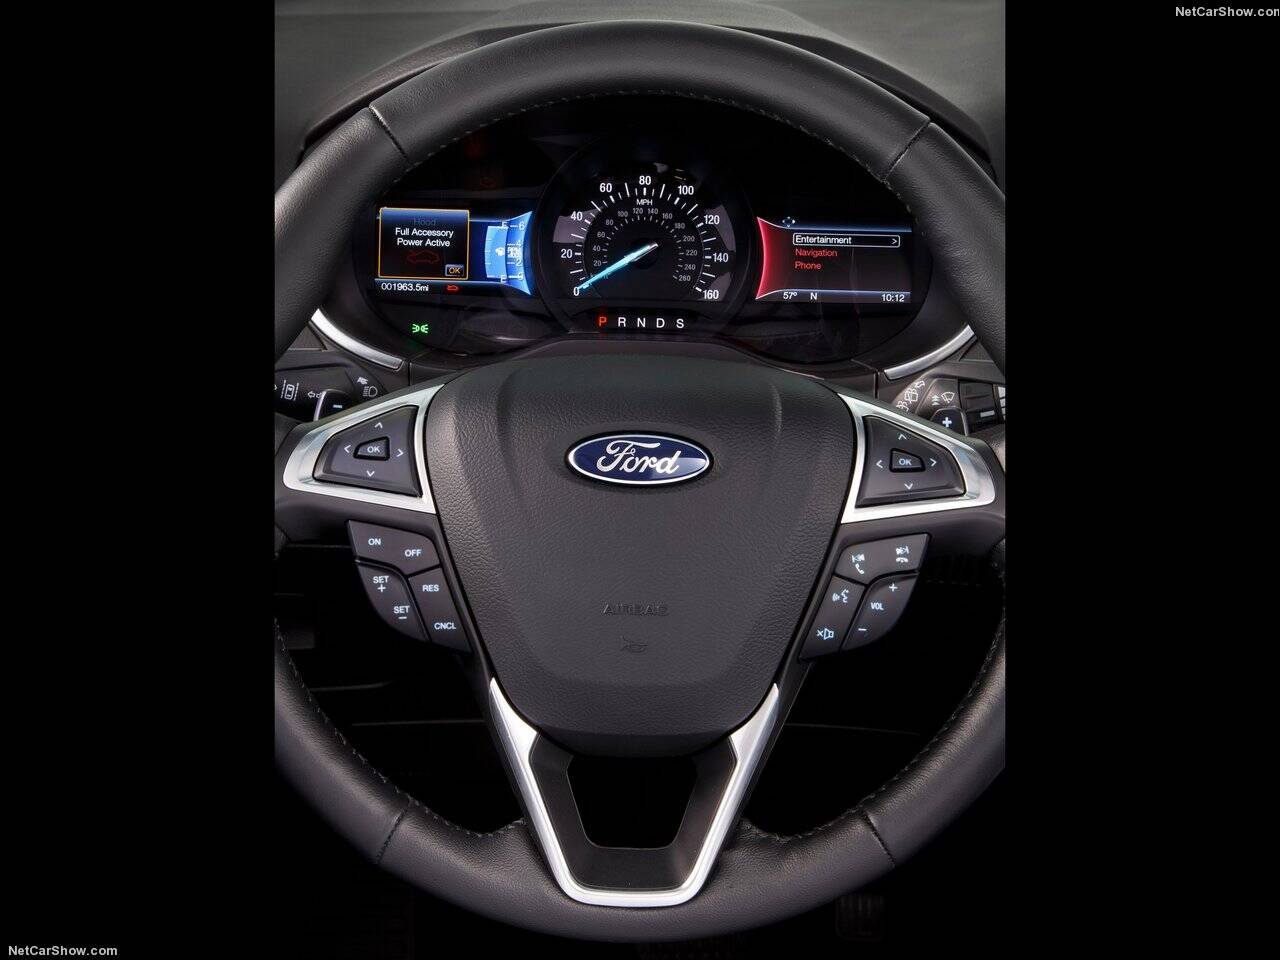 Ford Edge 2017. Foto: Divulgação